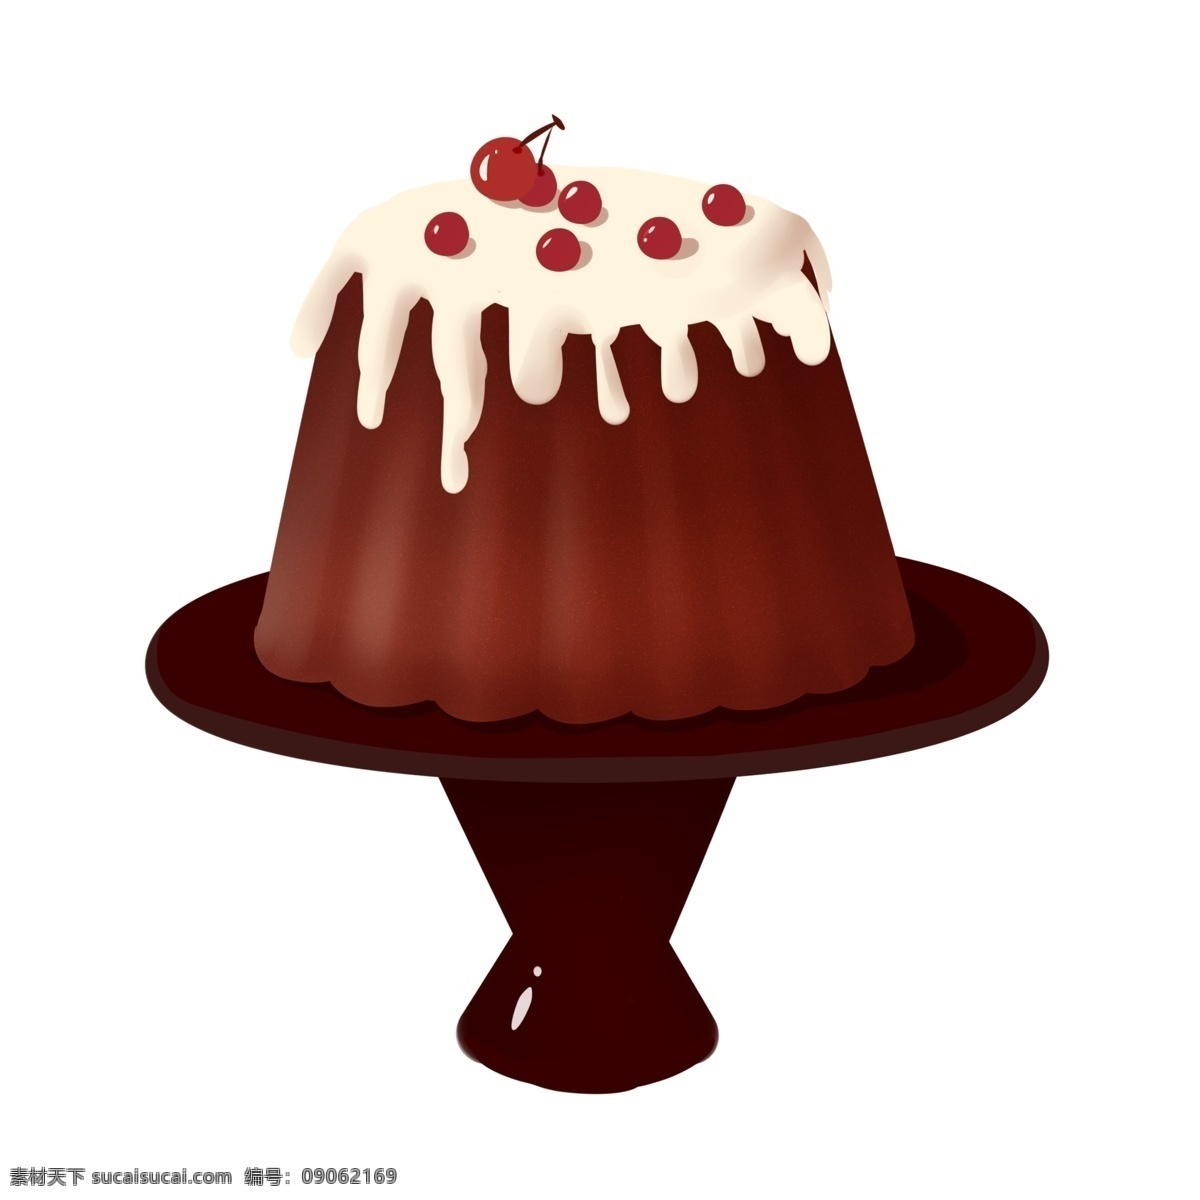 美味 水果 巧克力 蛋糕 巧克力蛋糕 奶油小蛋糕 甜品 甜点 美味水果蛋糕 烘焙蛋糕 插画